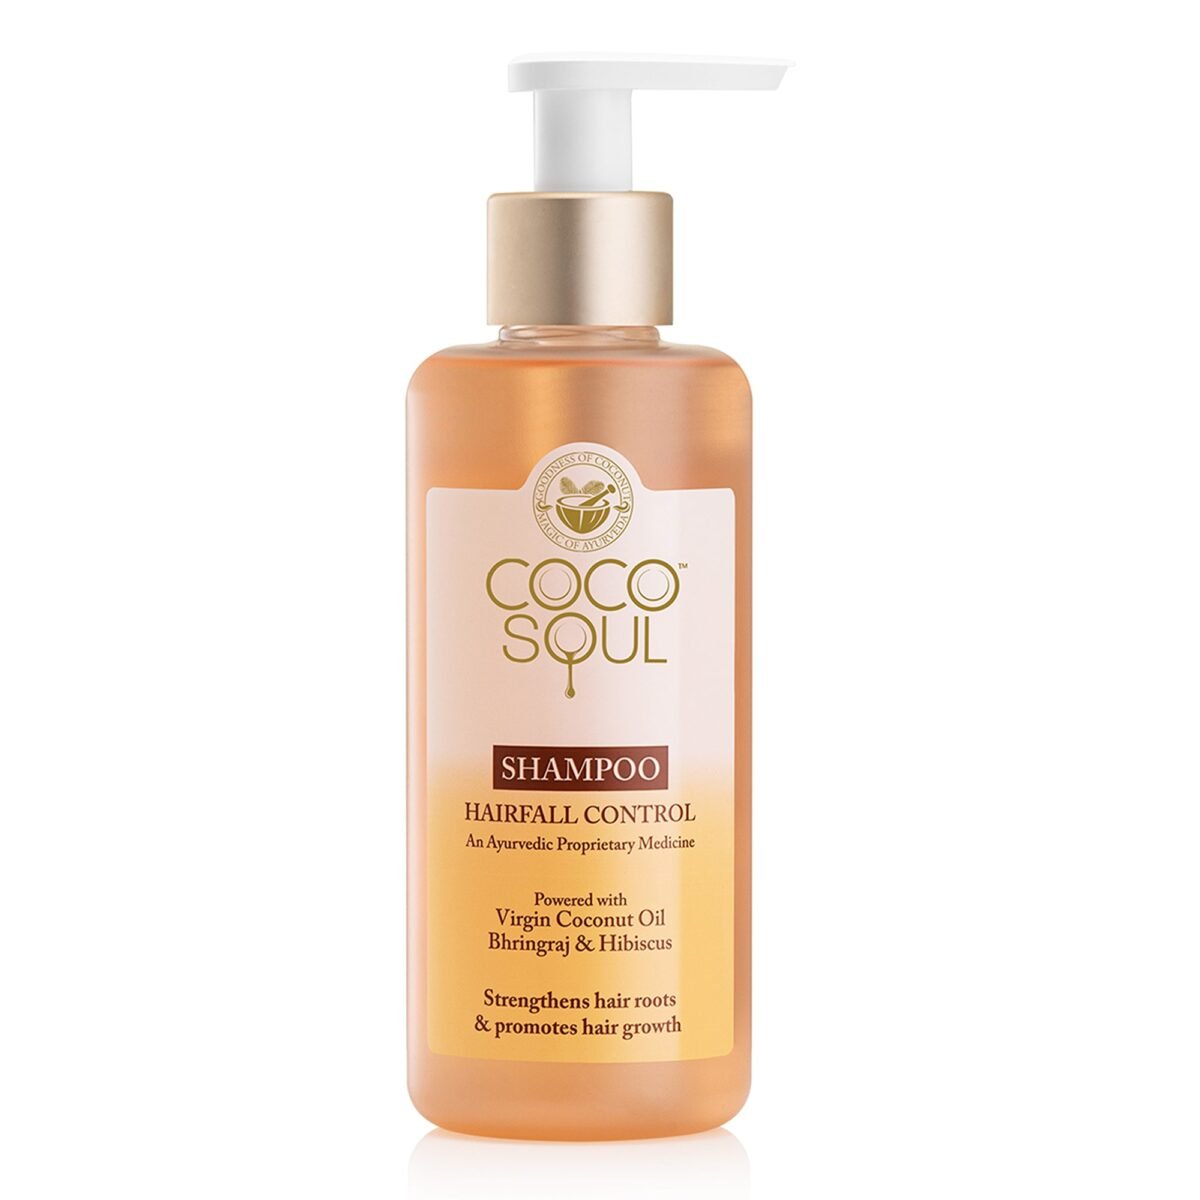 Coco Soul Hair Fall Control Shampoo 200ml